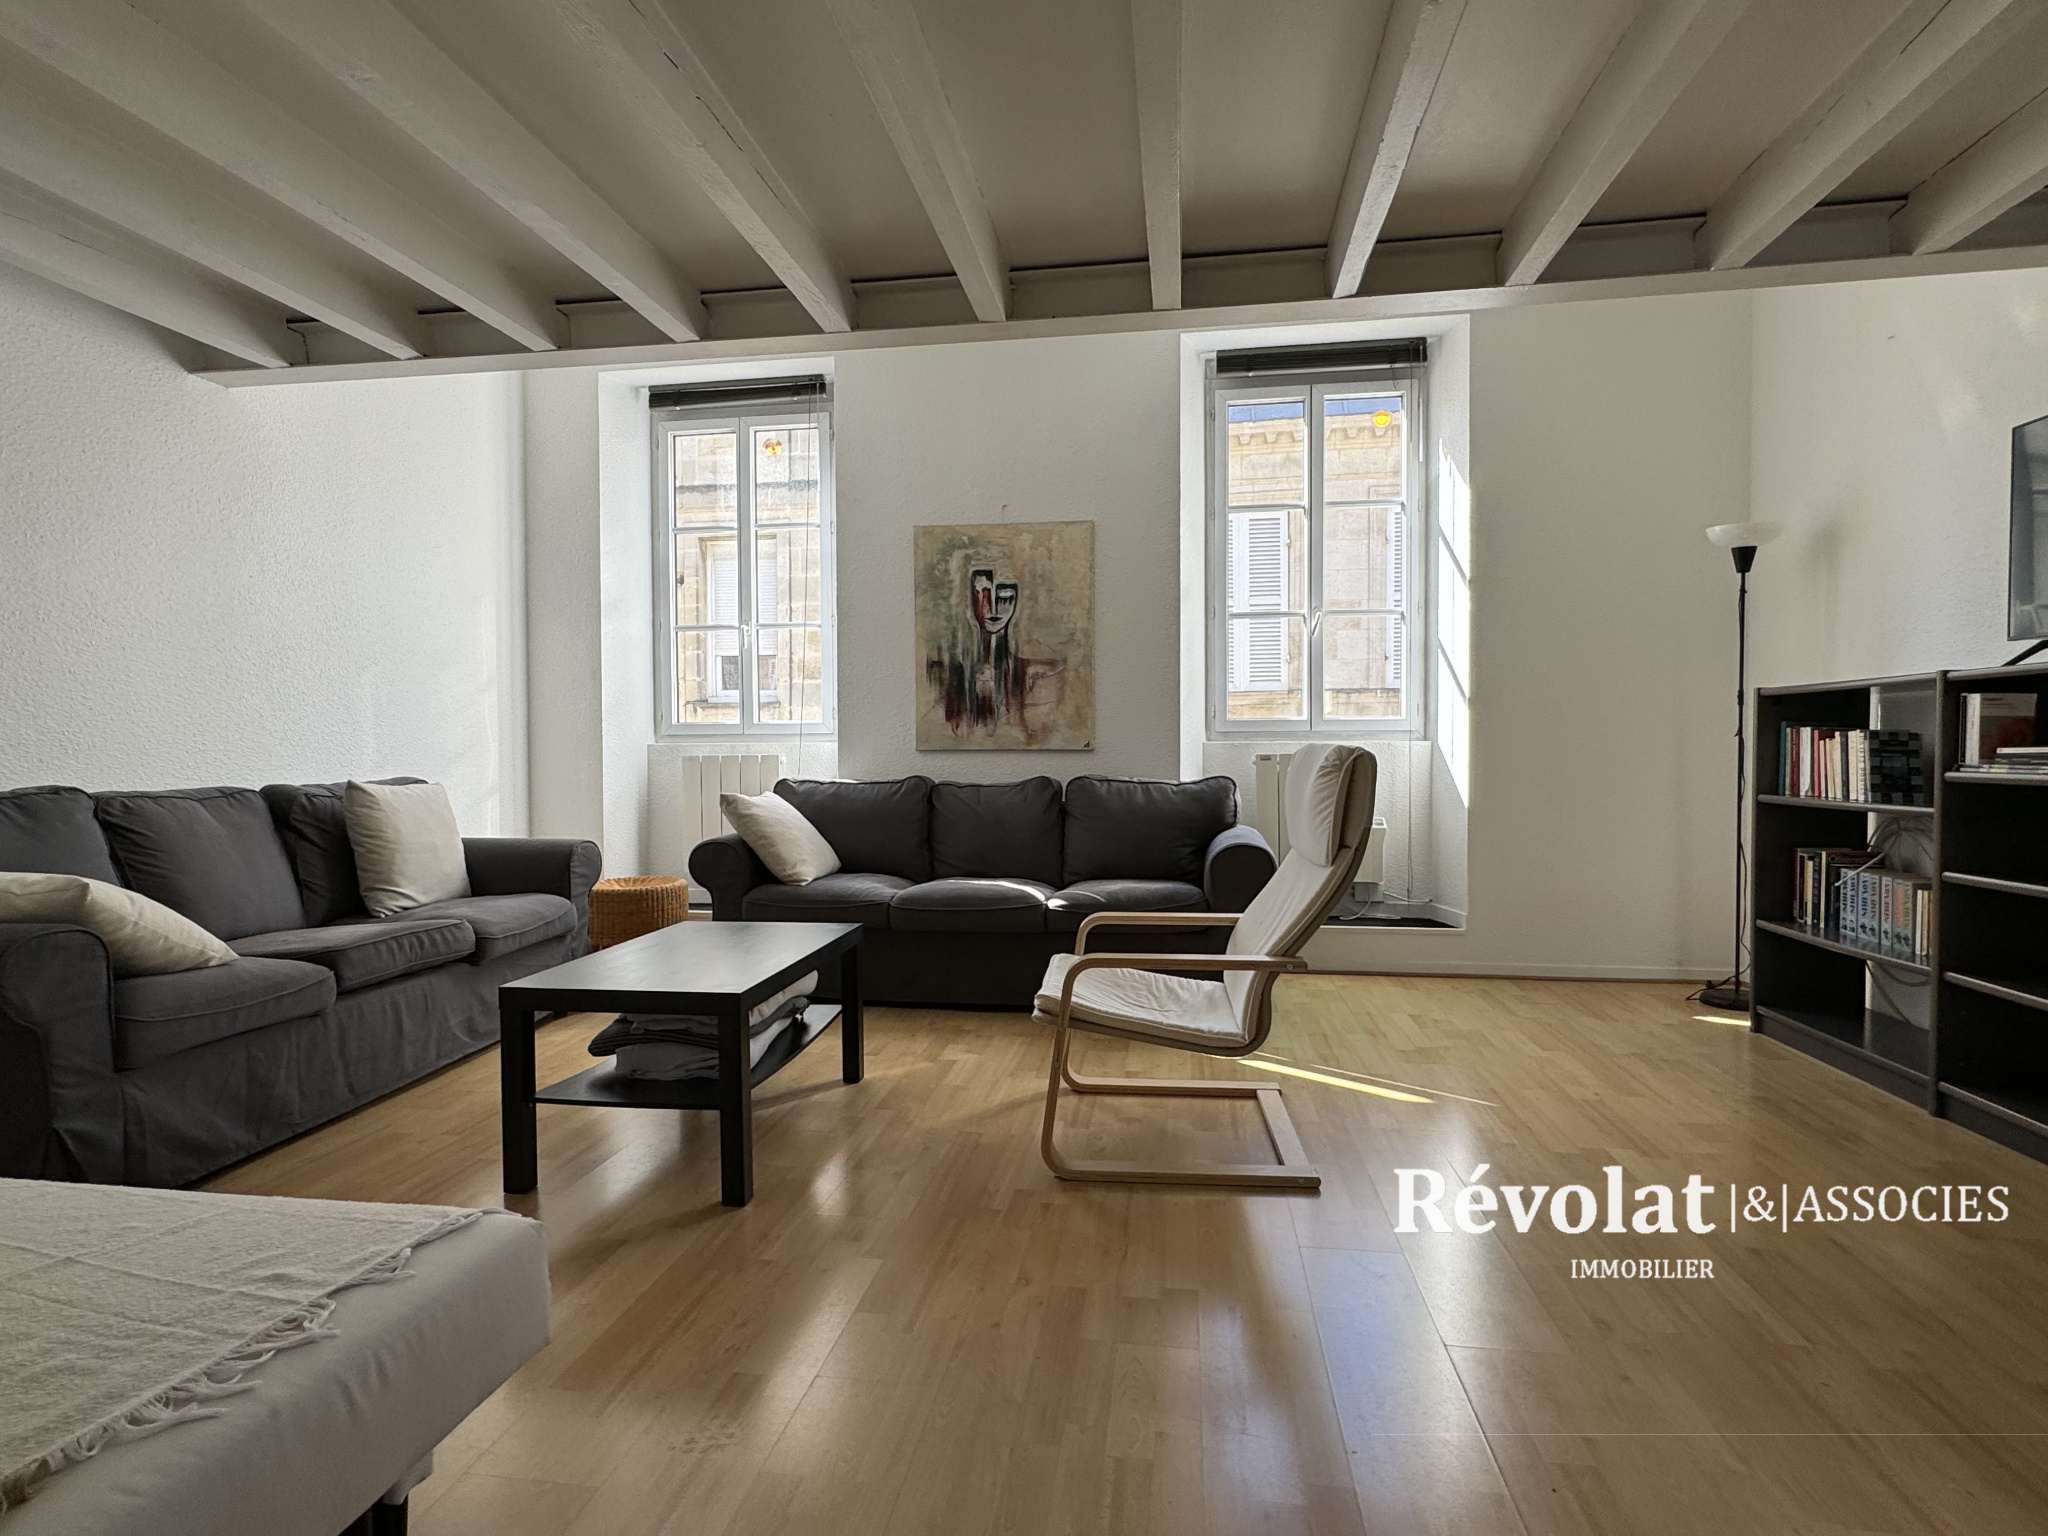 Vente Appartement 70m² 3 Pièces à Bordeaux (33300) - Révolat & Associés